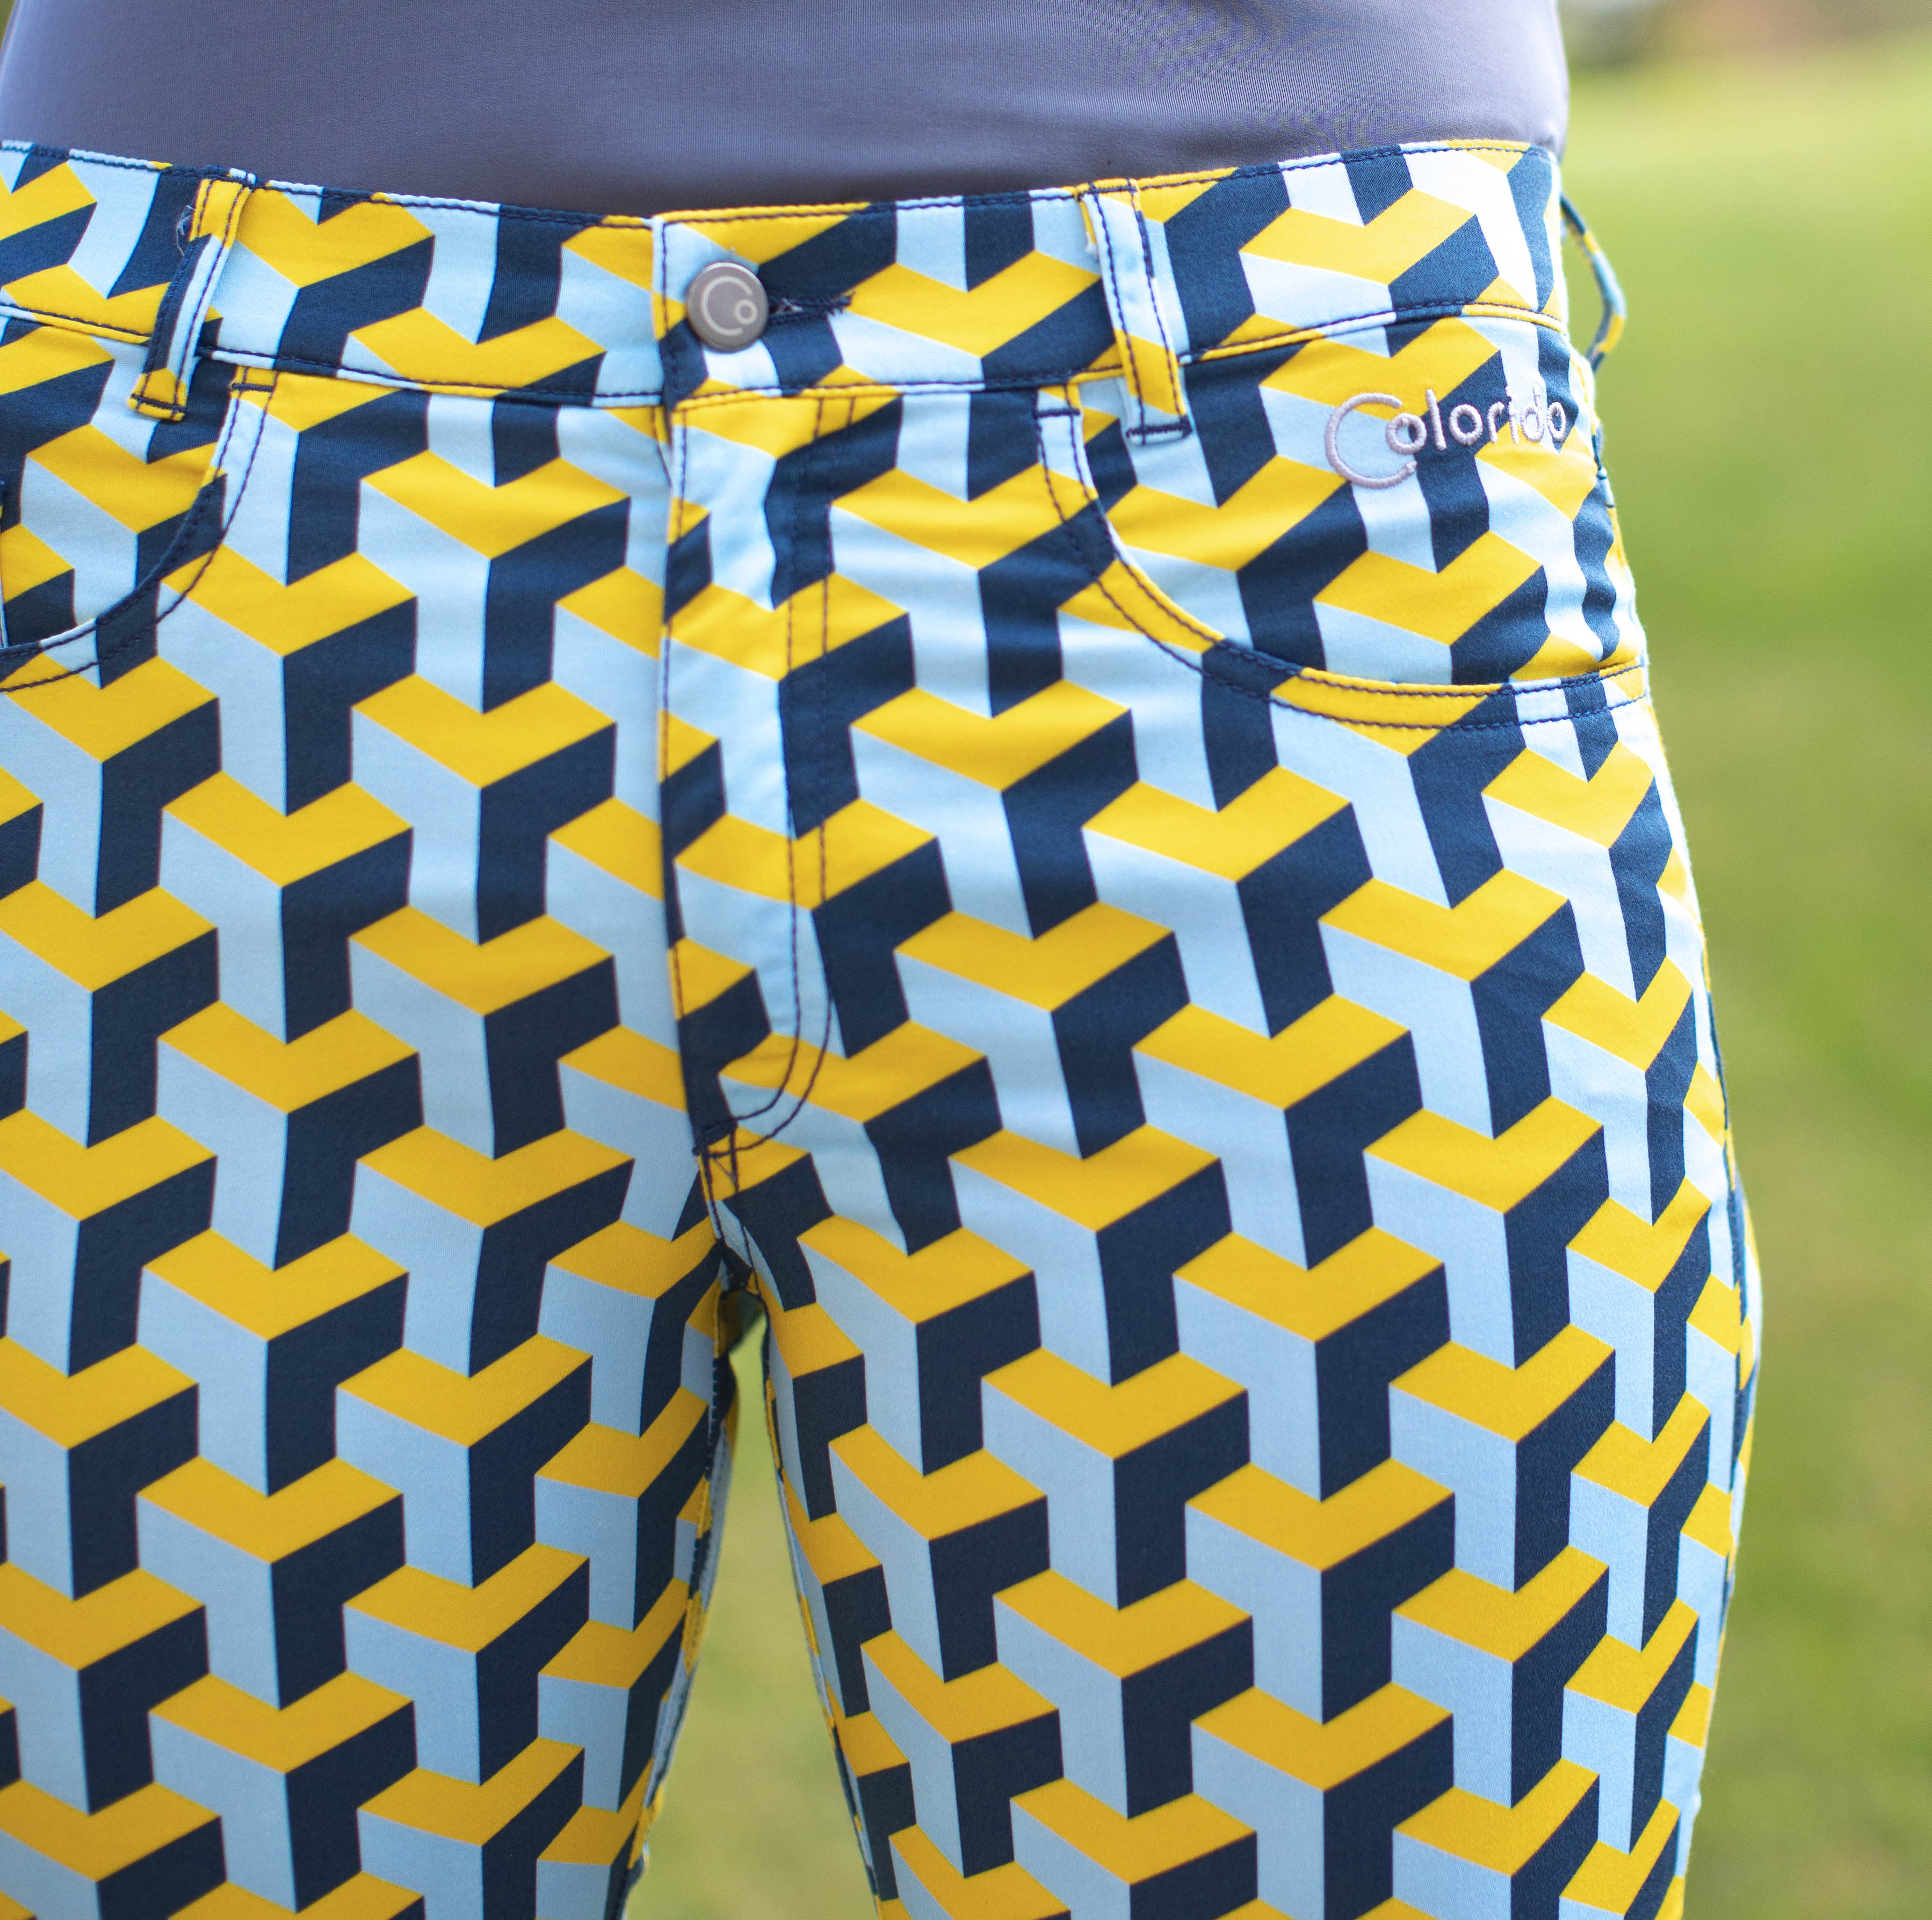 Dámské žluto-modré golfové kalhoty Colorido Velikost: L, Délka nohavic: PRODLOUŽENÁ, Barva: ŽLUTÁ